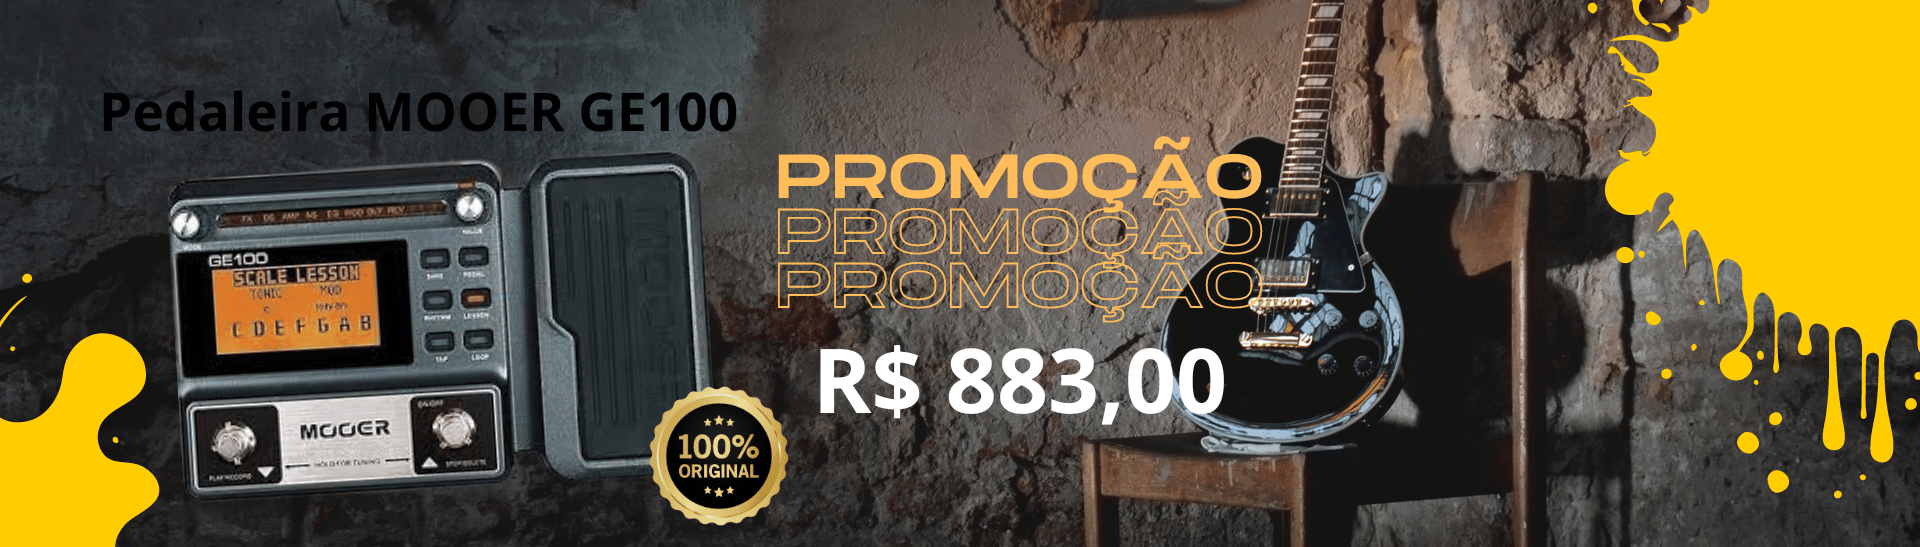 promo-pedaleira-mooer-ge100